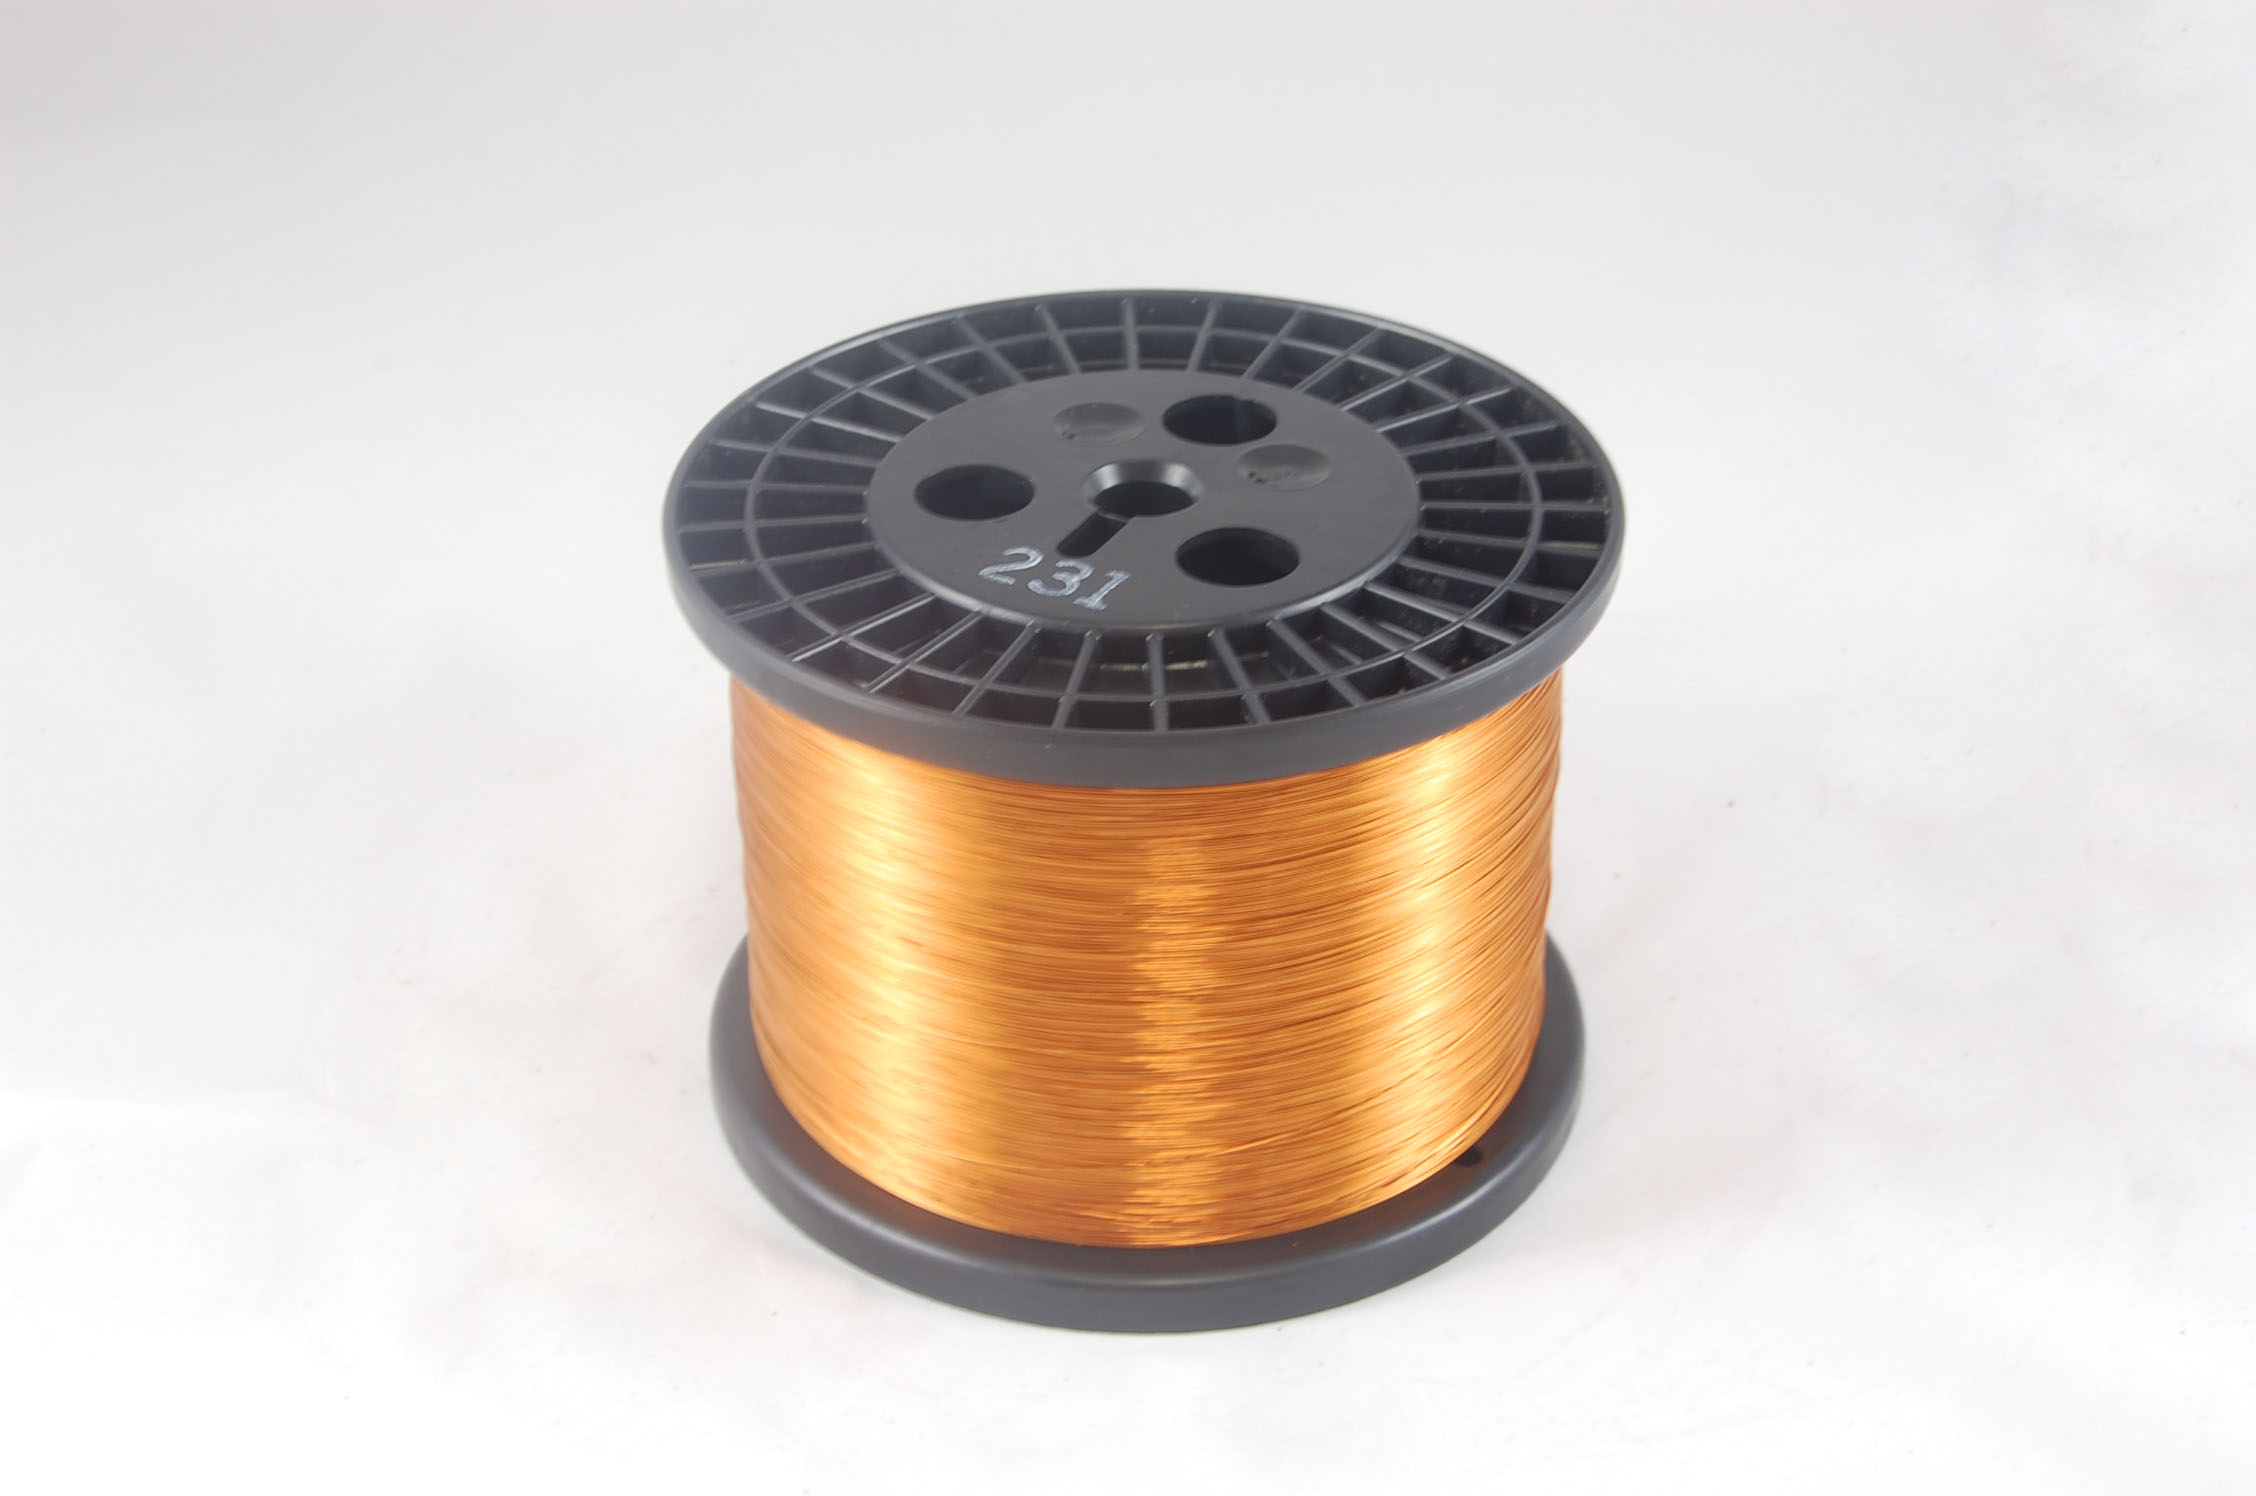 #15 Single GP/MR-200 Round MW 35 Copper Magnet Wire 200°C, copper, 10 LB 6" spool (average wght.)